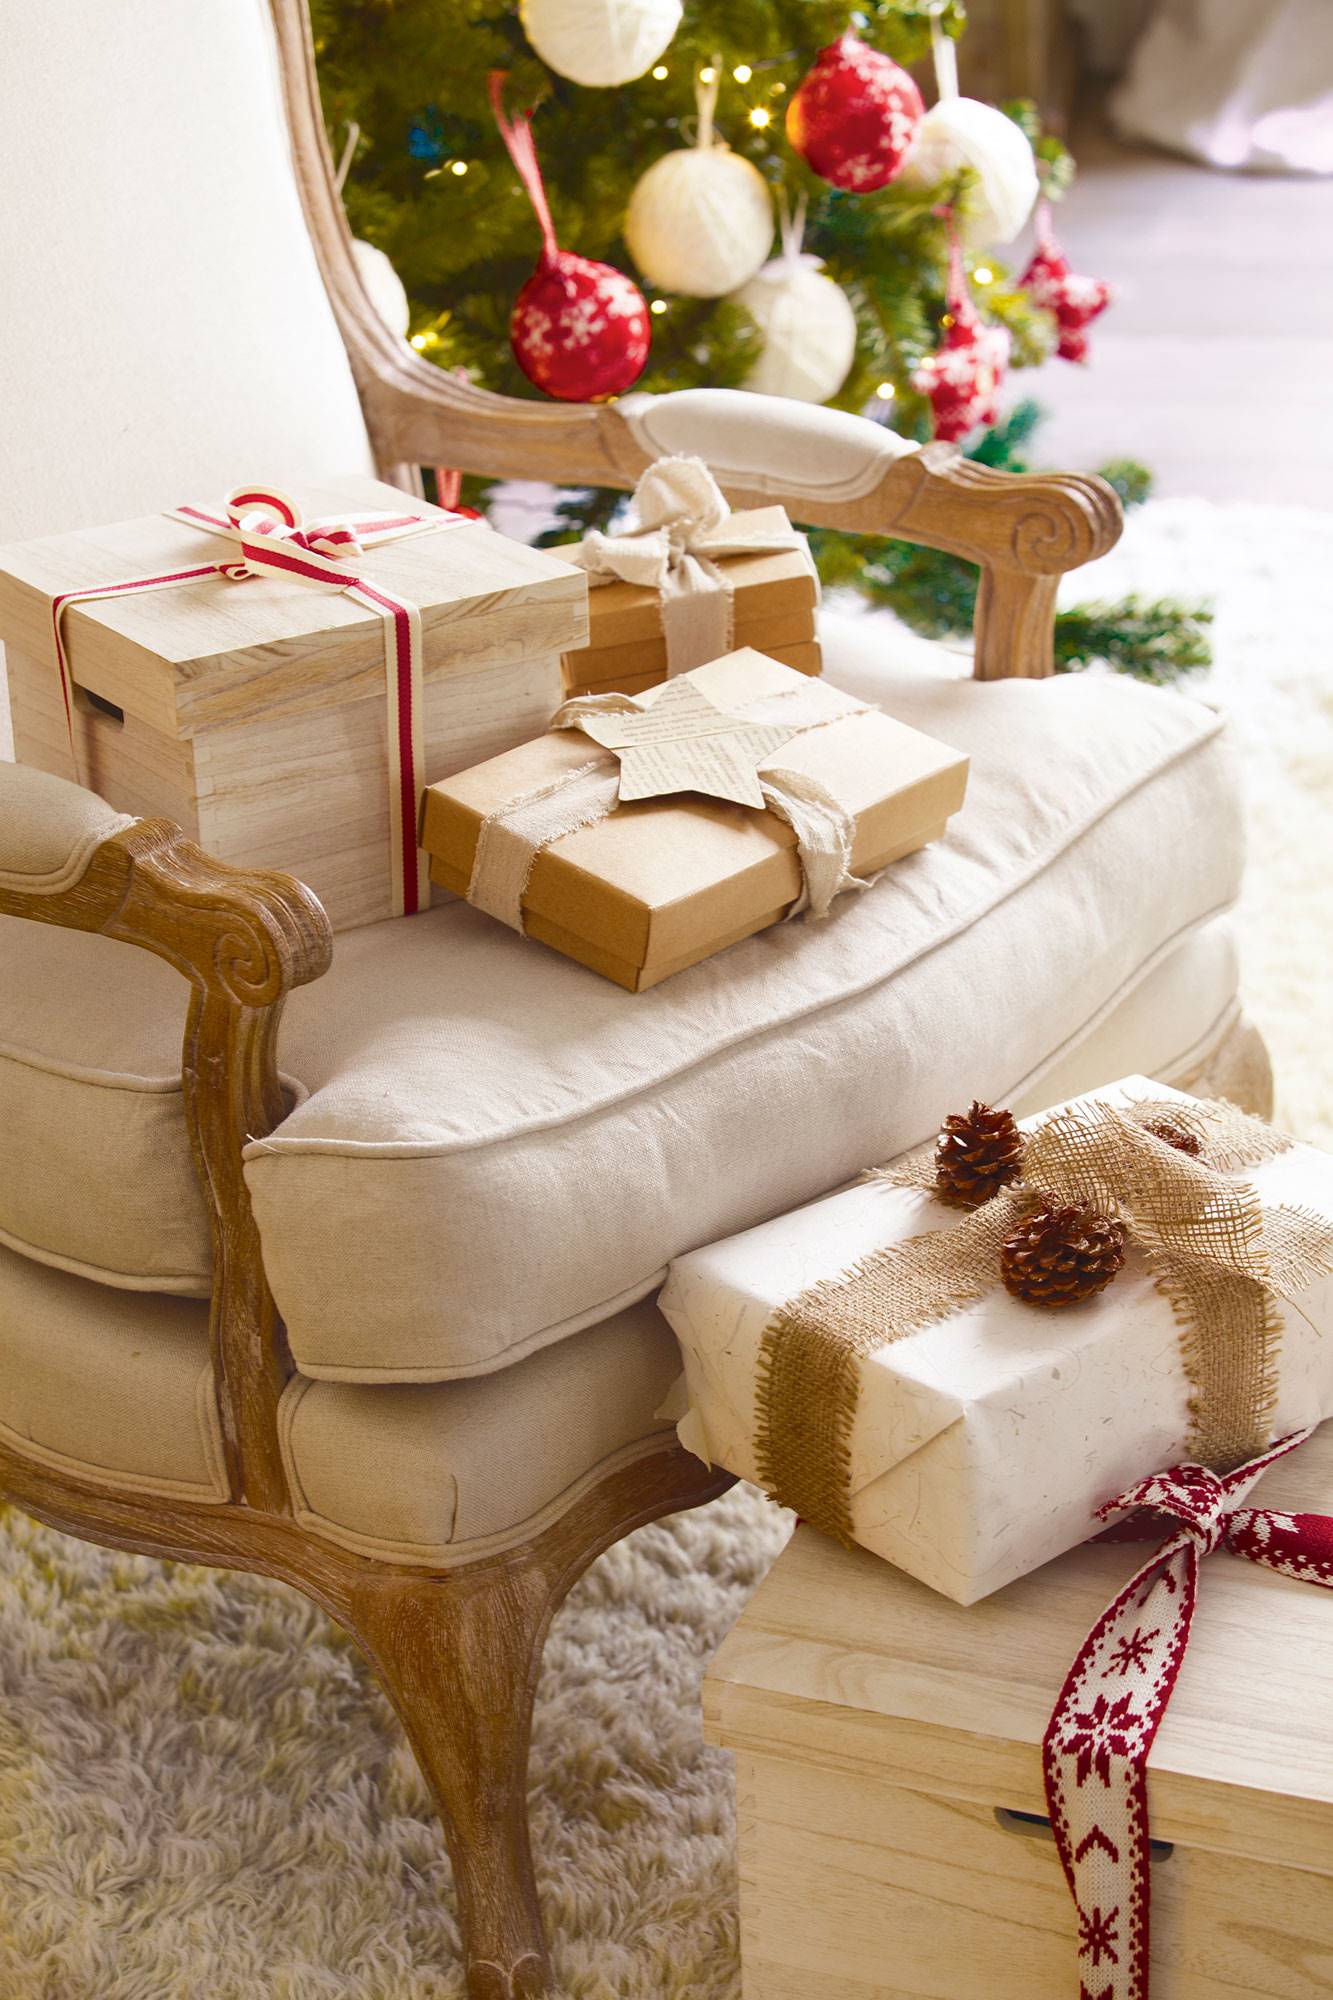 Detalle de regalos de Navidad con cajas de madera y de cartón